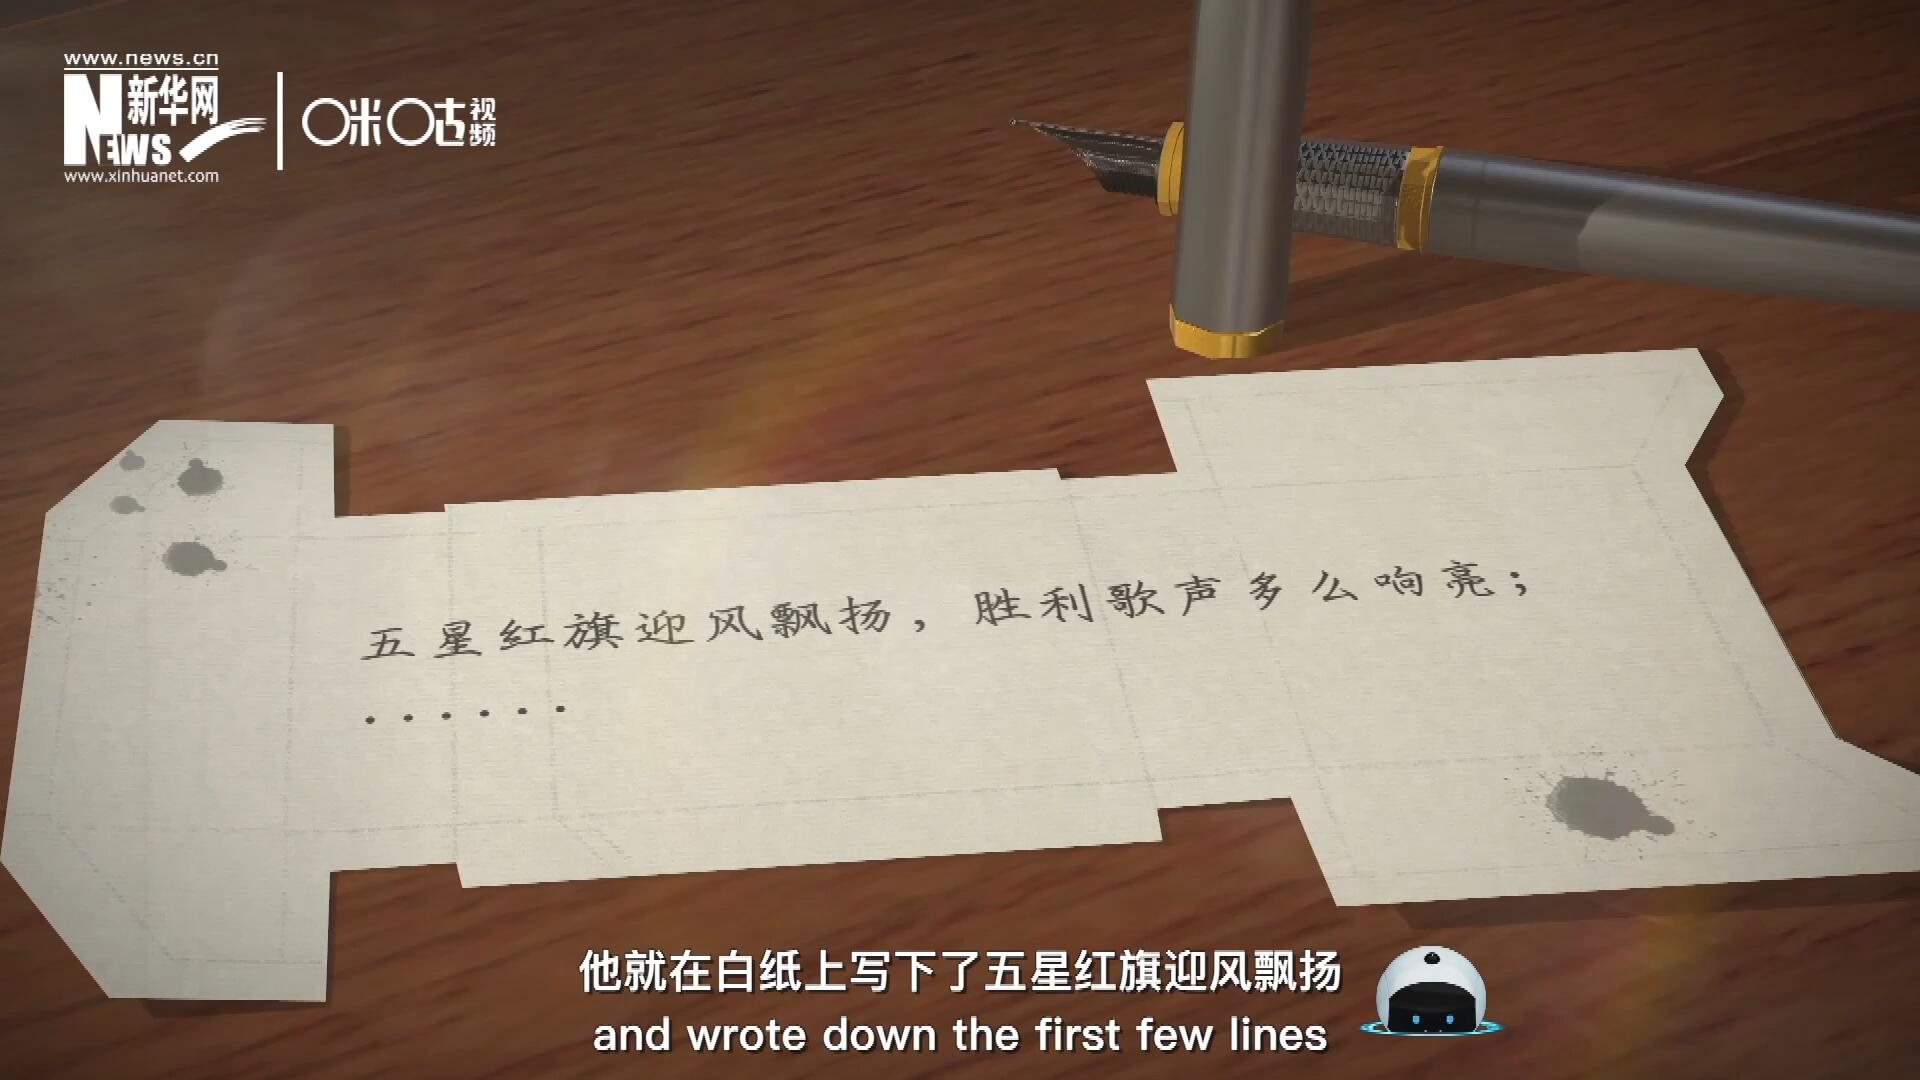 王莘在香煙盒的背面寫下了“五星紅旗迎風飄揚”幾句歌詞。